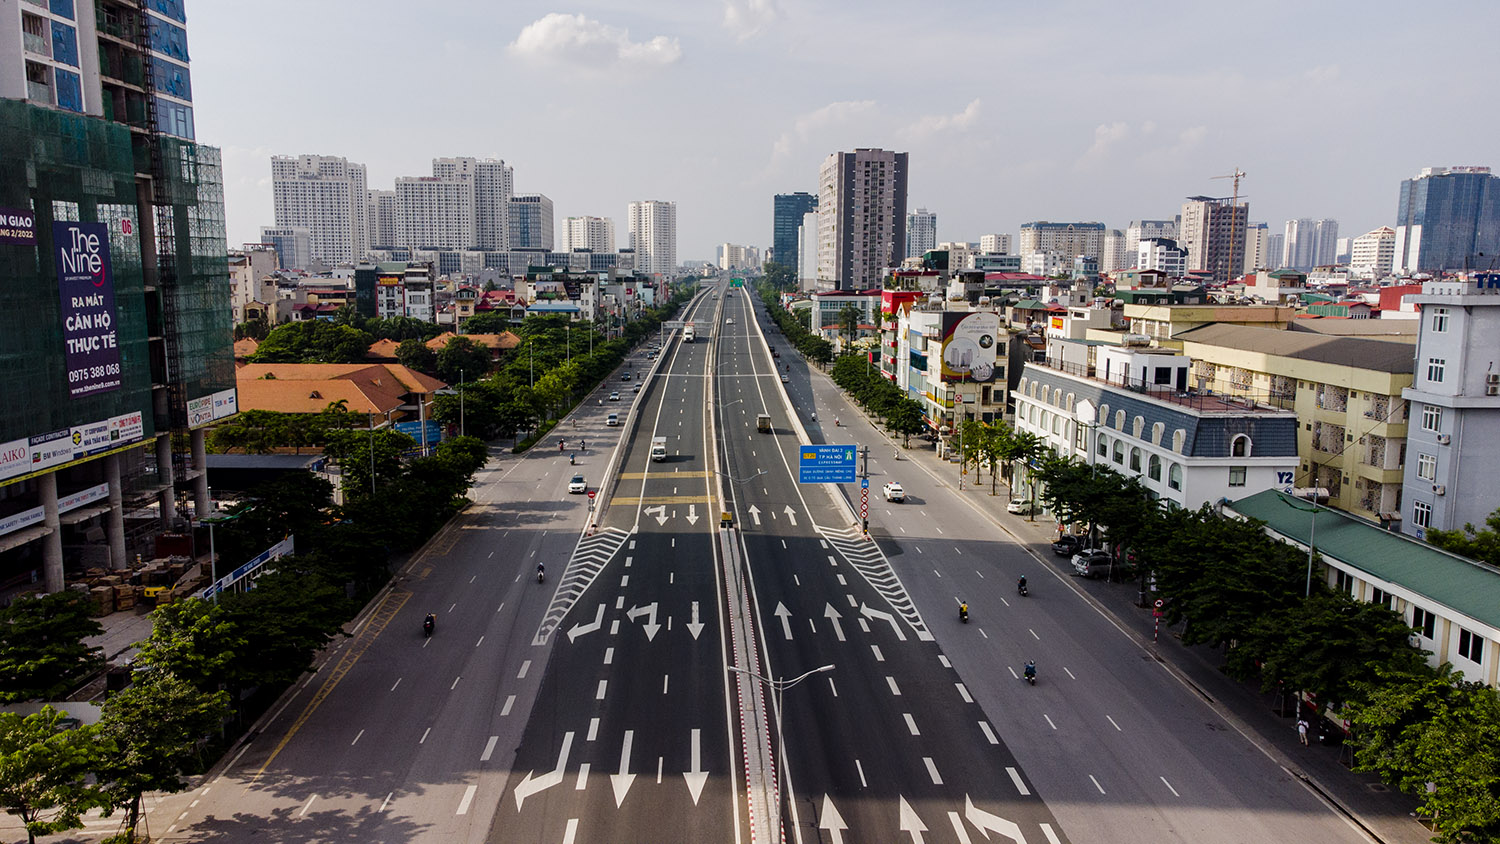 Trước tình hình dịch bệnh trên địa bàn Thủ đô đang có những diễn biến phức tạp, Thành phố Hà Nội đã quyết định giãn cách xã hội theo nguyên tắc Chỉ thị 16 của Thủ tướng Chính phủ bắt đầu từ 6h ngày 24/7. Thời gian thực hiện giãn cách là 15 ngày.